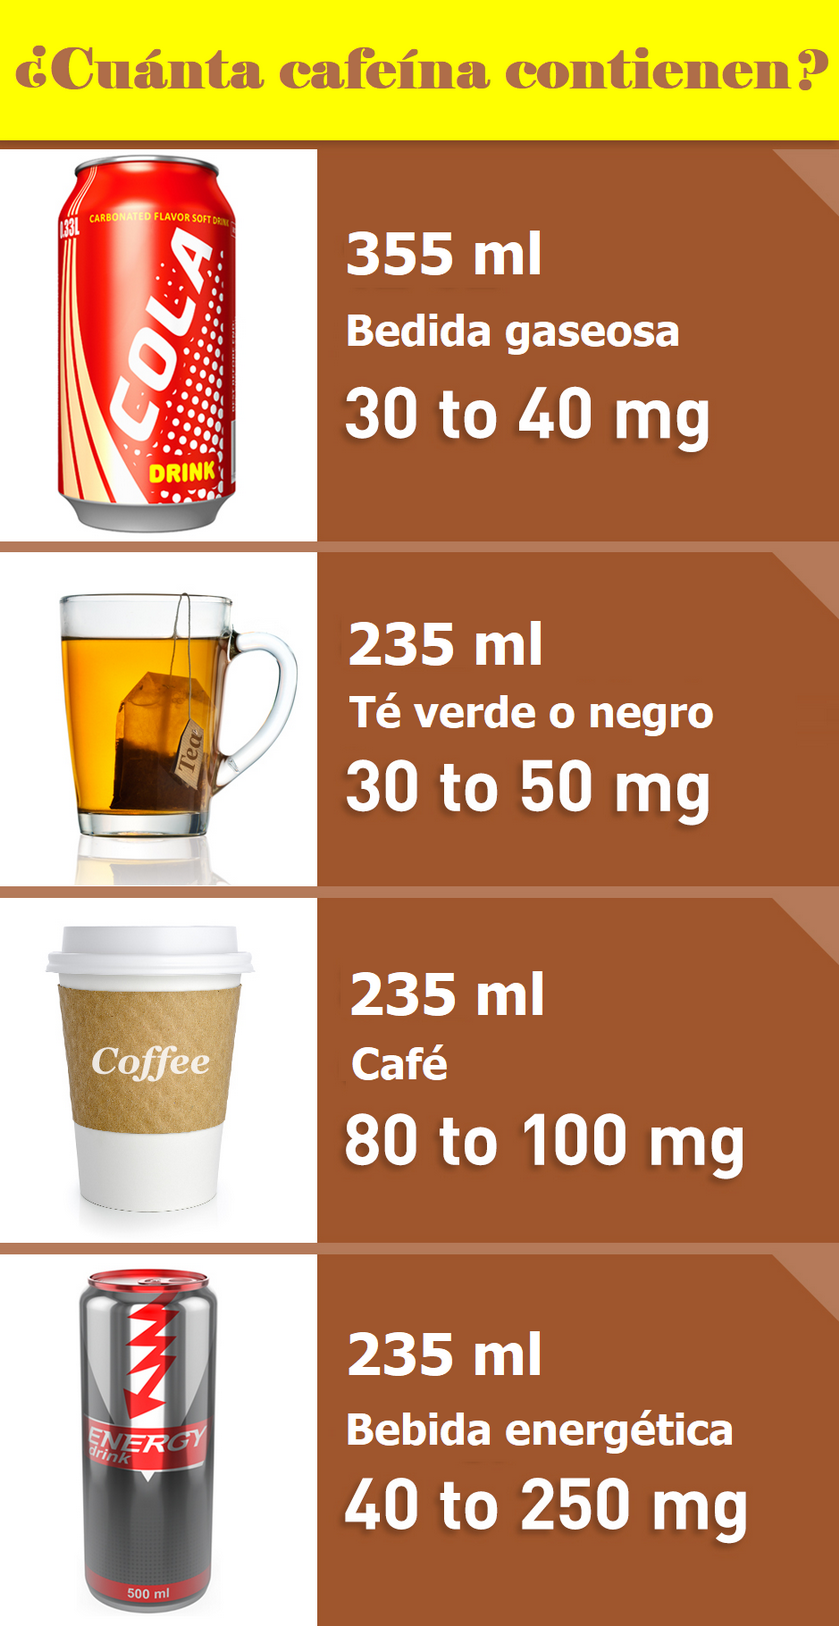 Cuánta cafeína tiene una taza de café